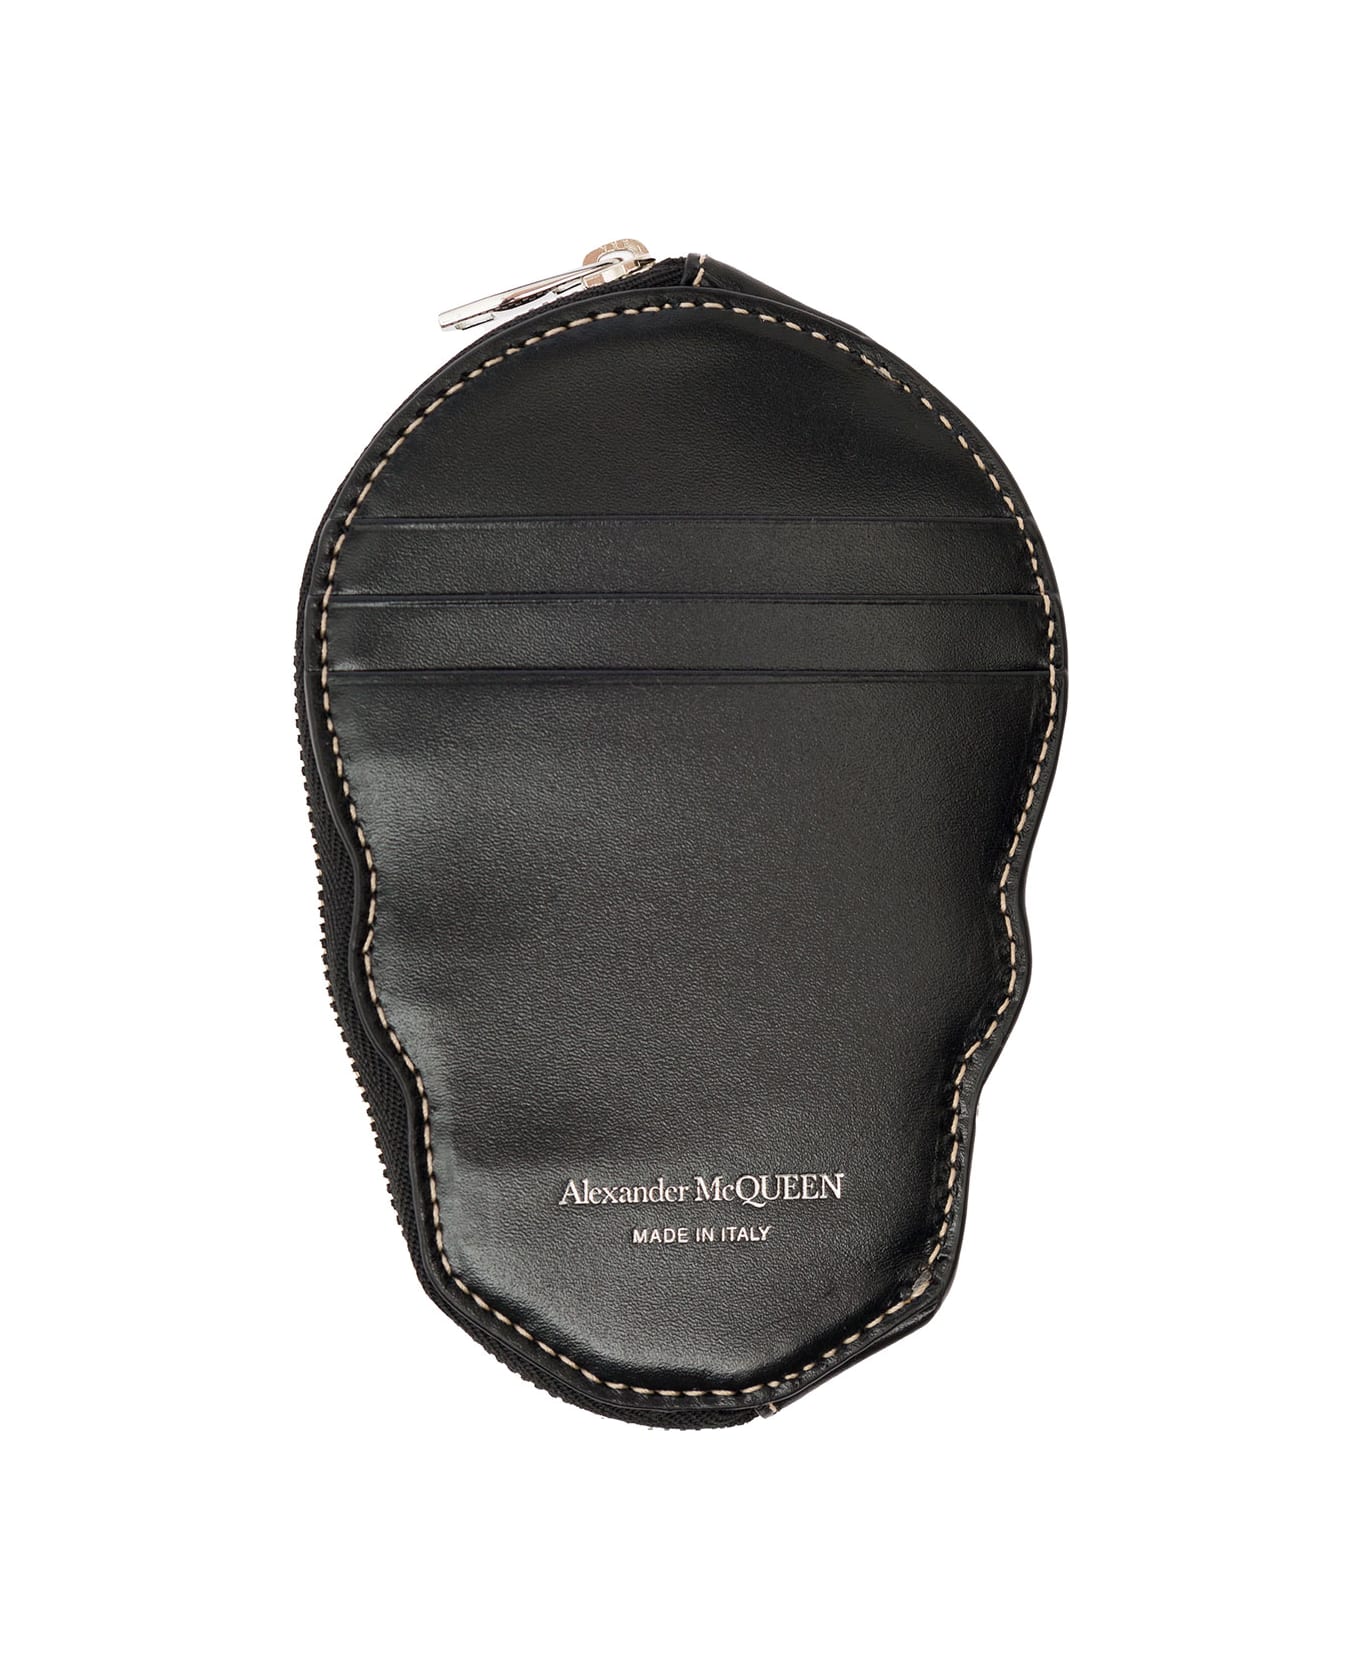 Alexander McQueen Black Skull-shaped Card-holder With Zip In Leather Man Alexander Mcqueen - Black